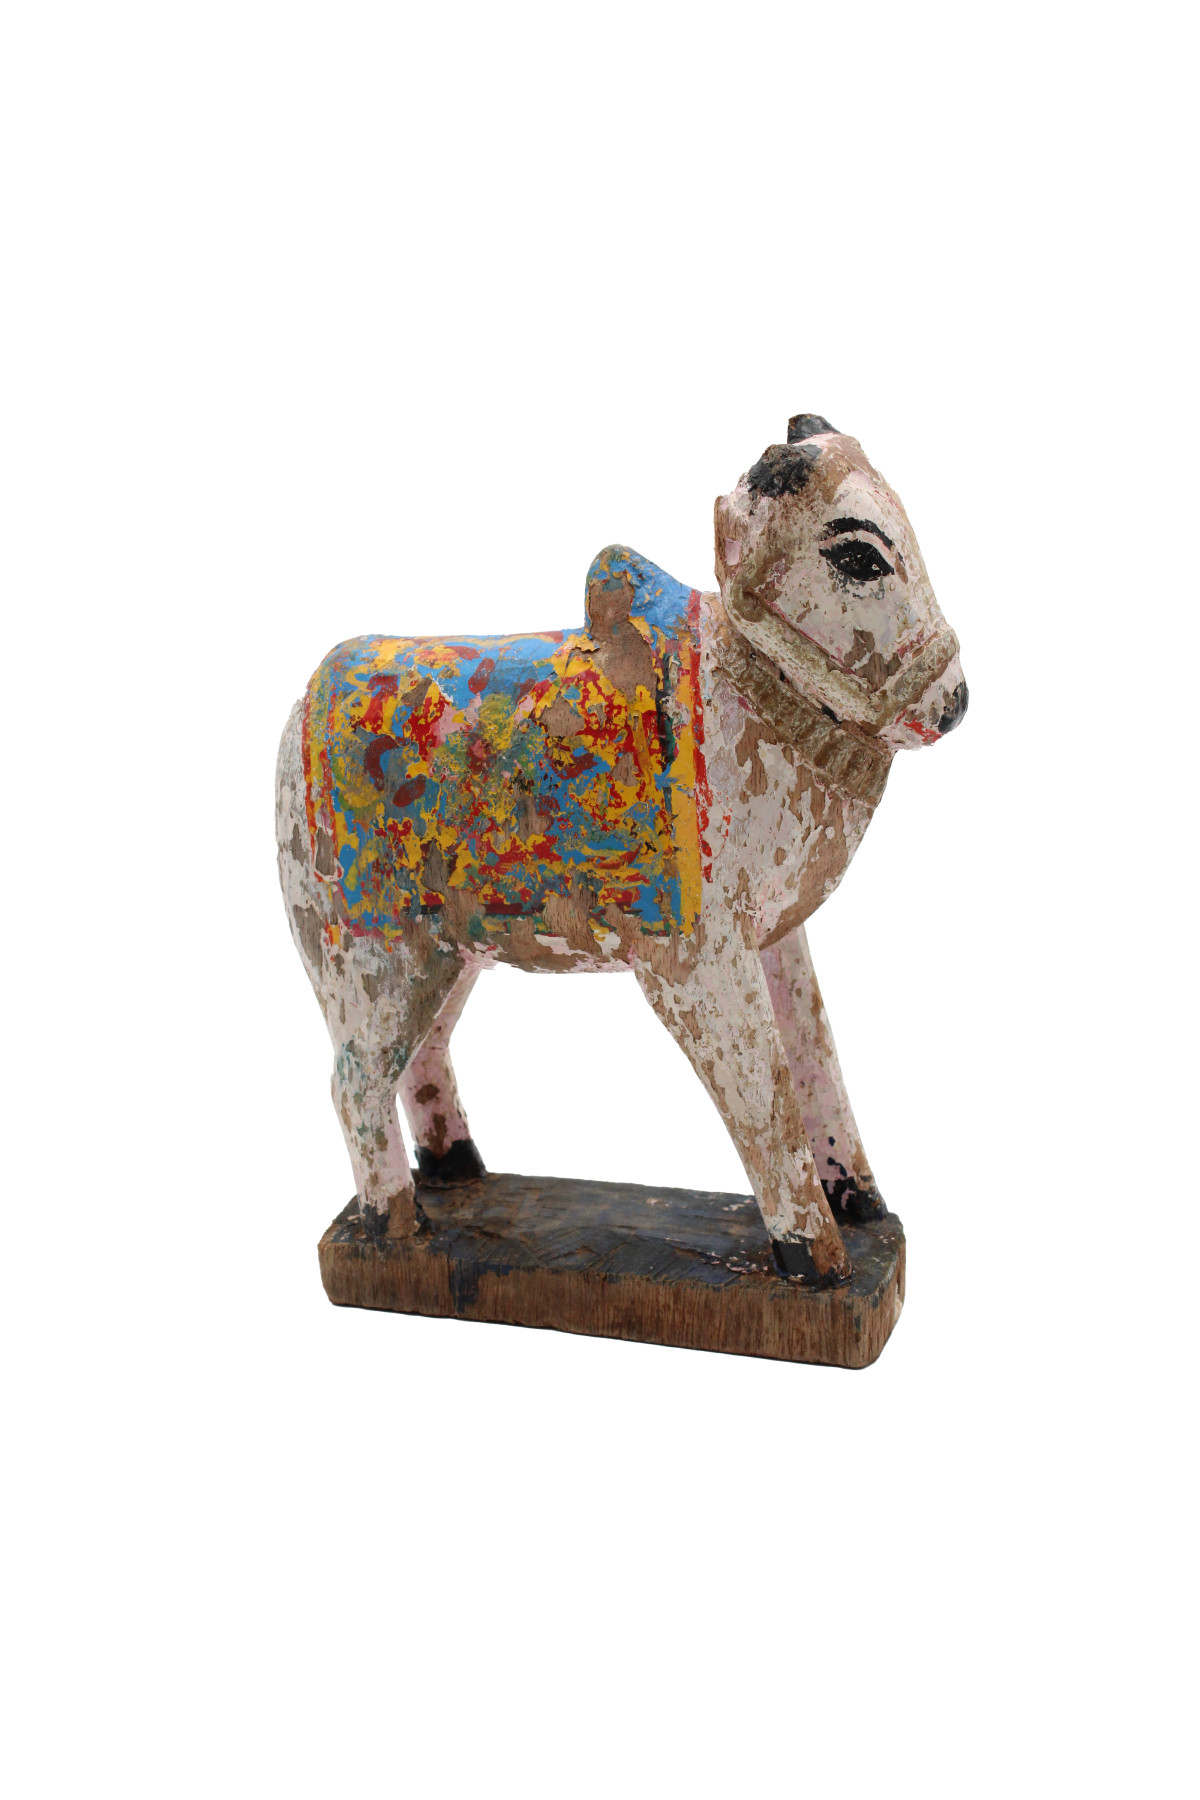 La petite vache en bois, histoire d'un jouet suisse iconique